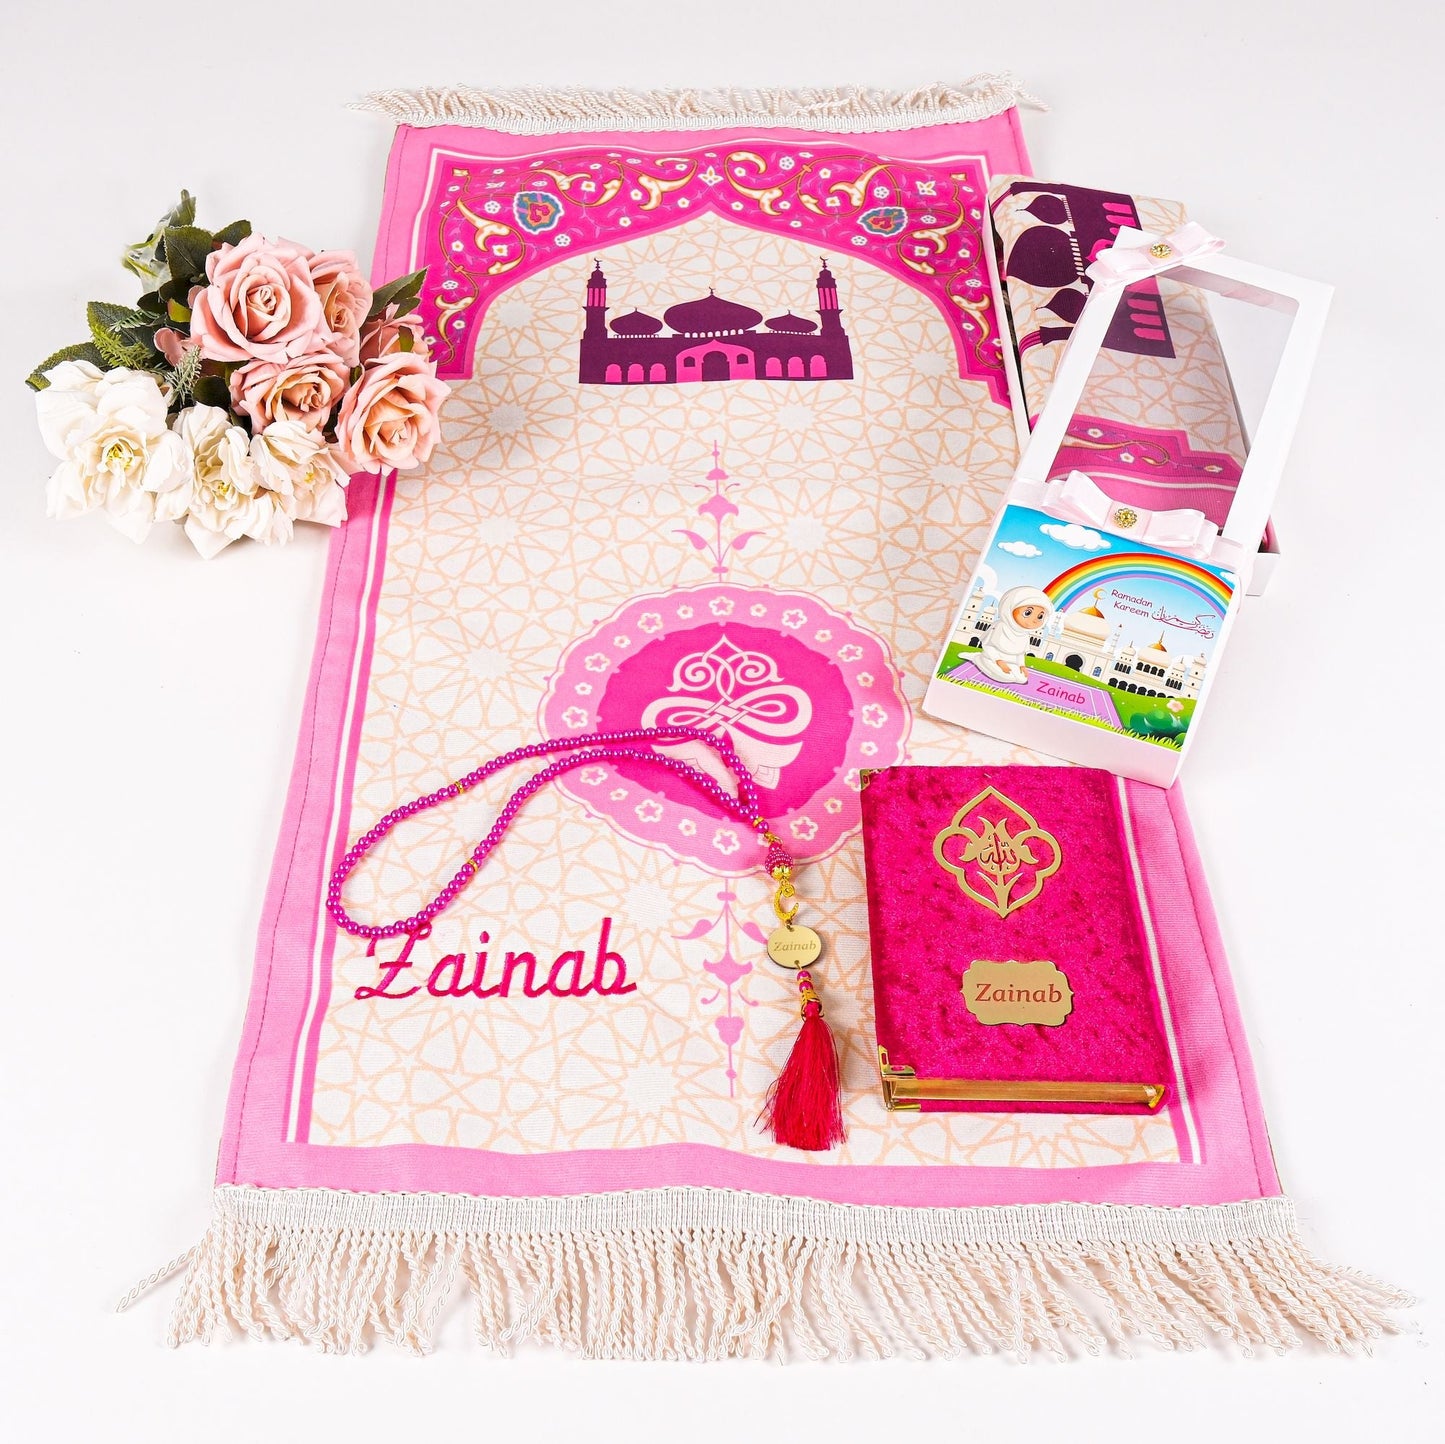 Personalized Kids Prayer Mat Quran Tasbeeh Ramadan Gift Set for Girls